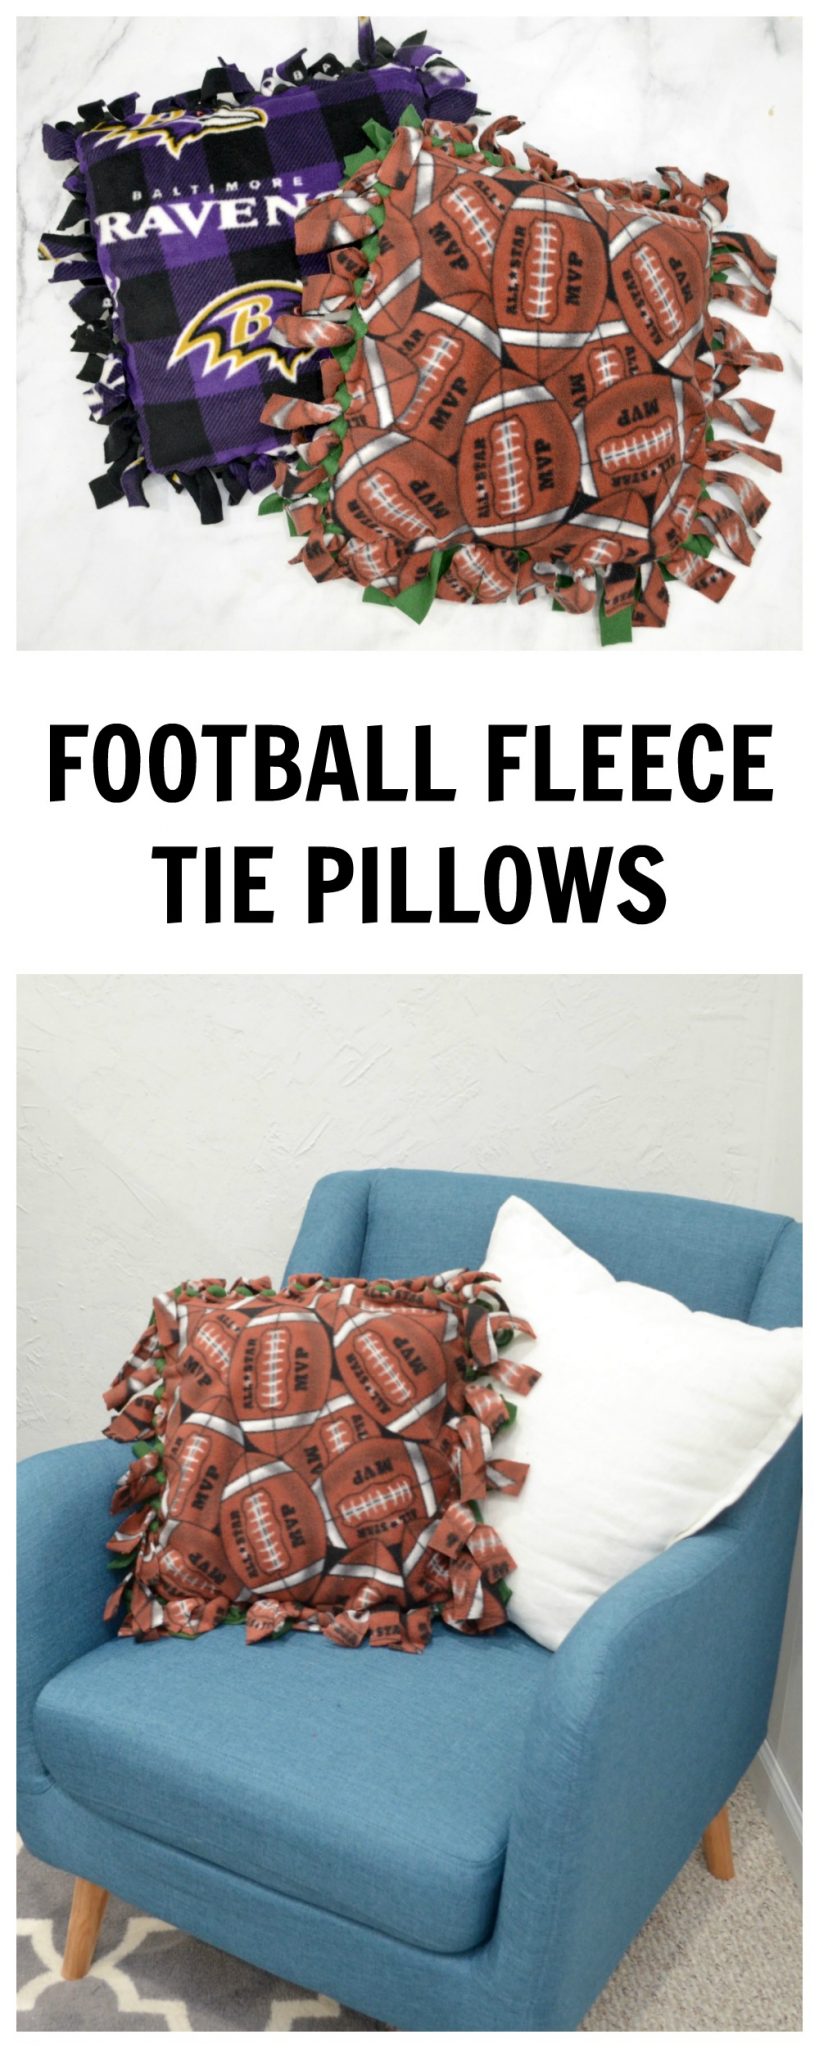 Football Fleece Tie Pillows